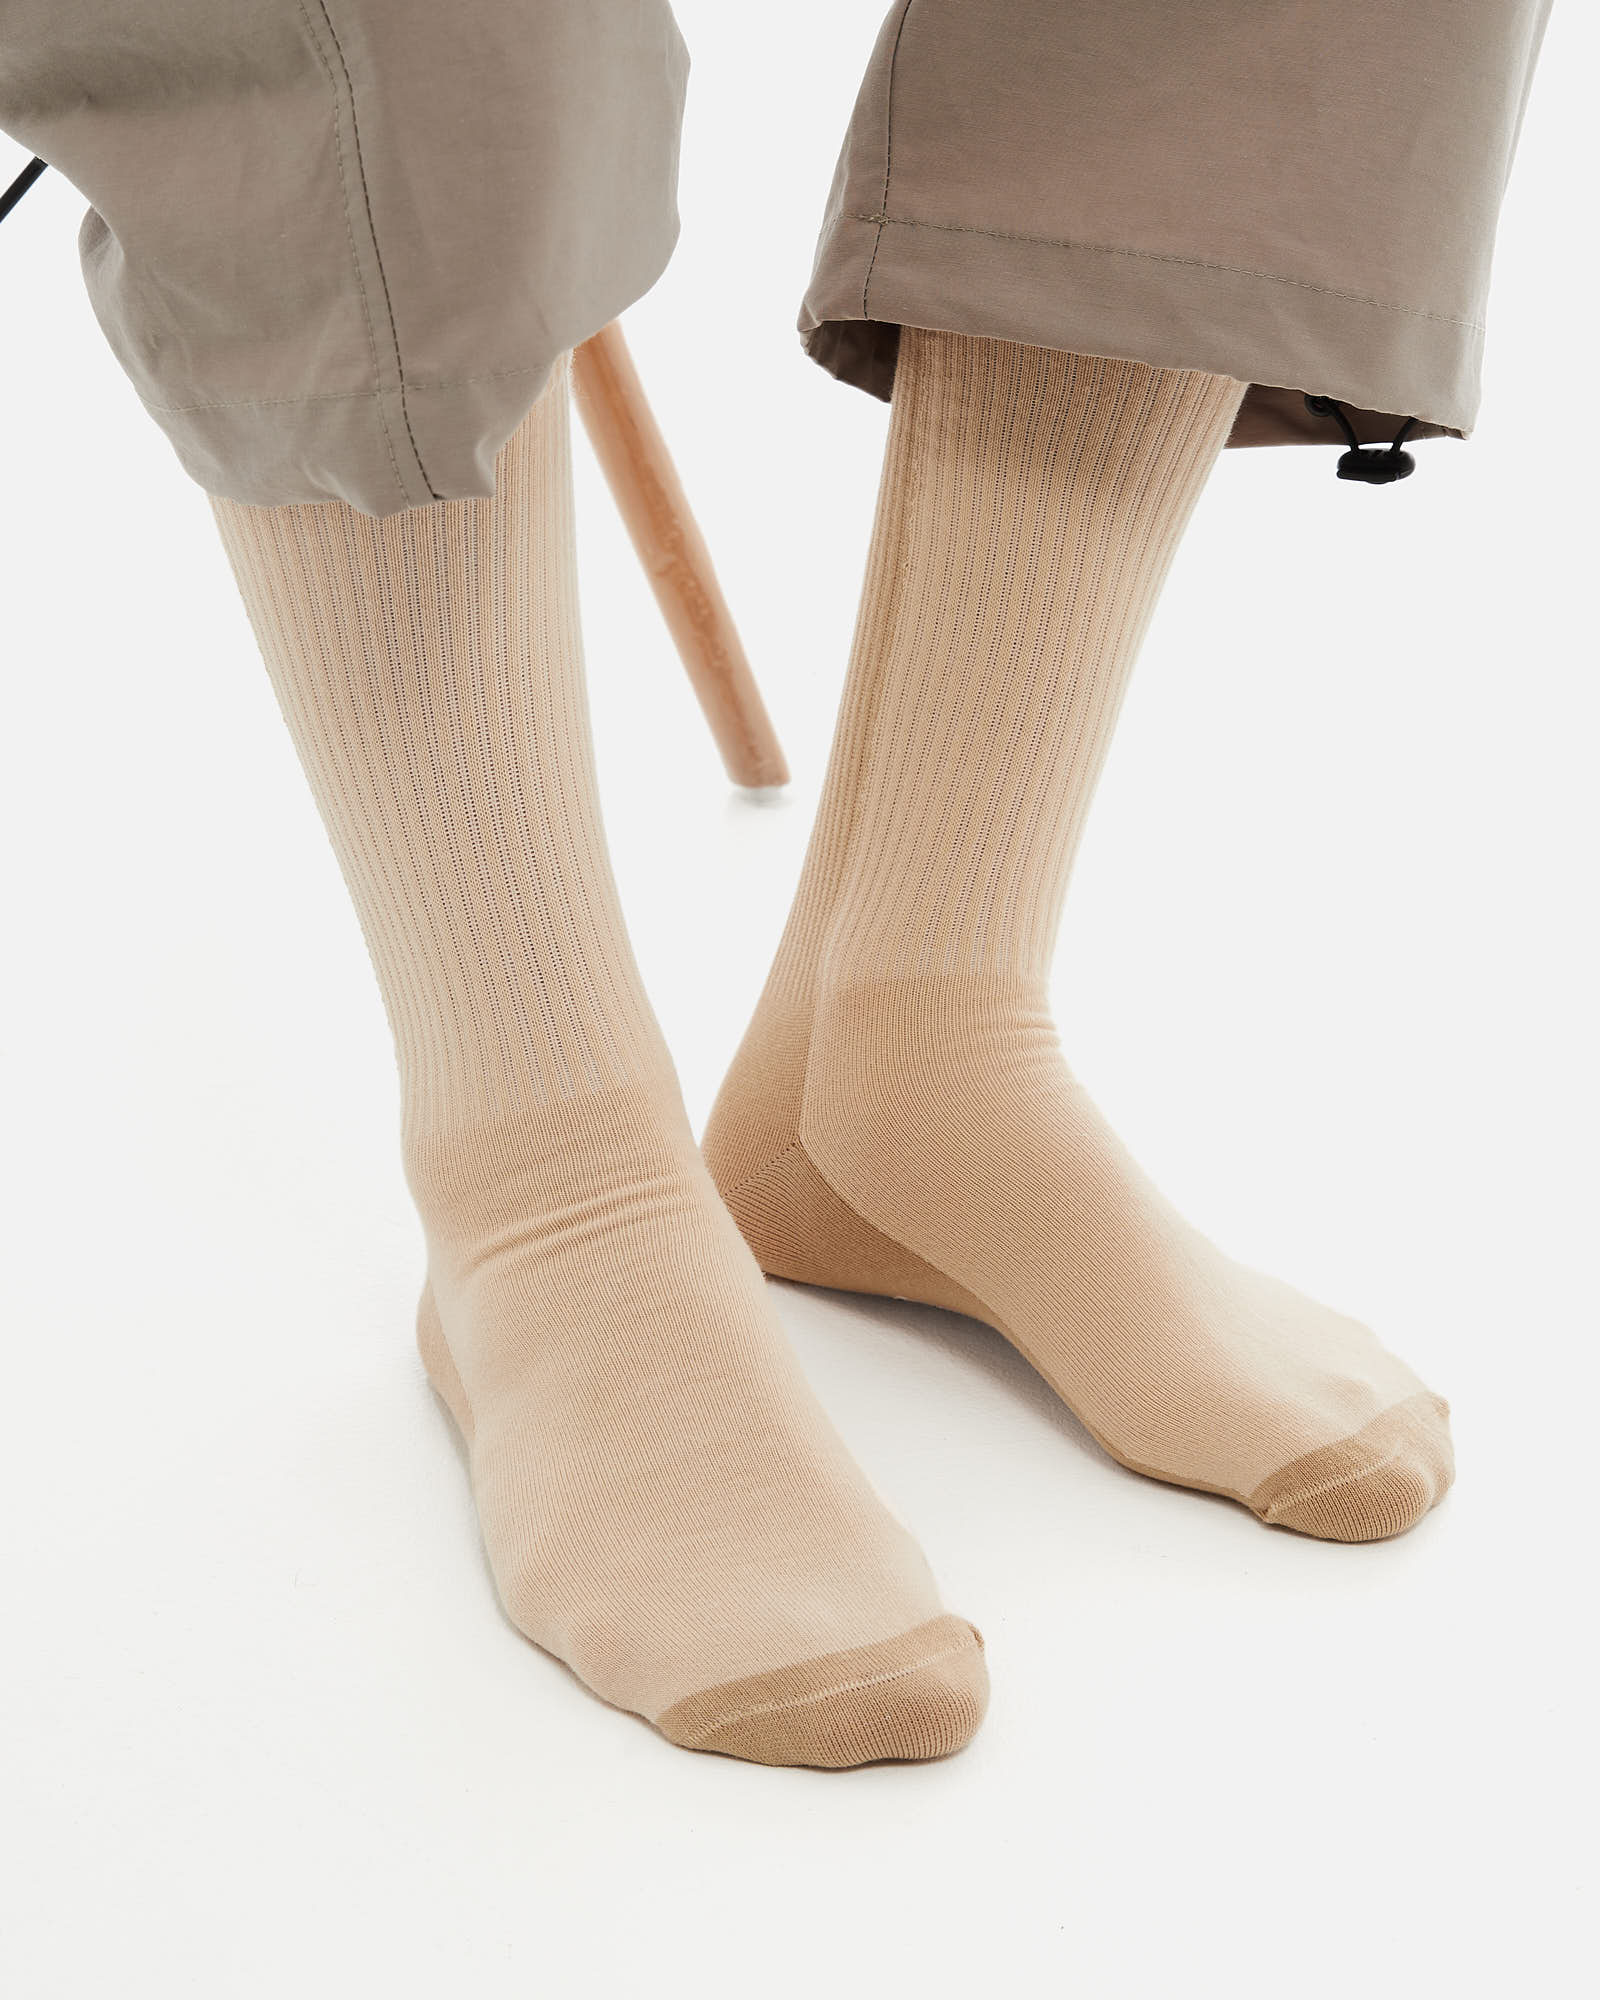 Носки Anteater Socks - фото 1